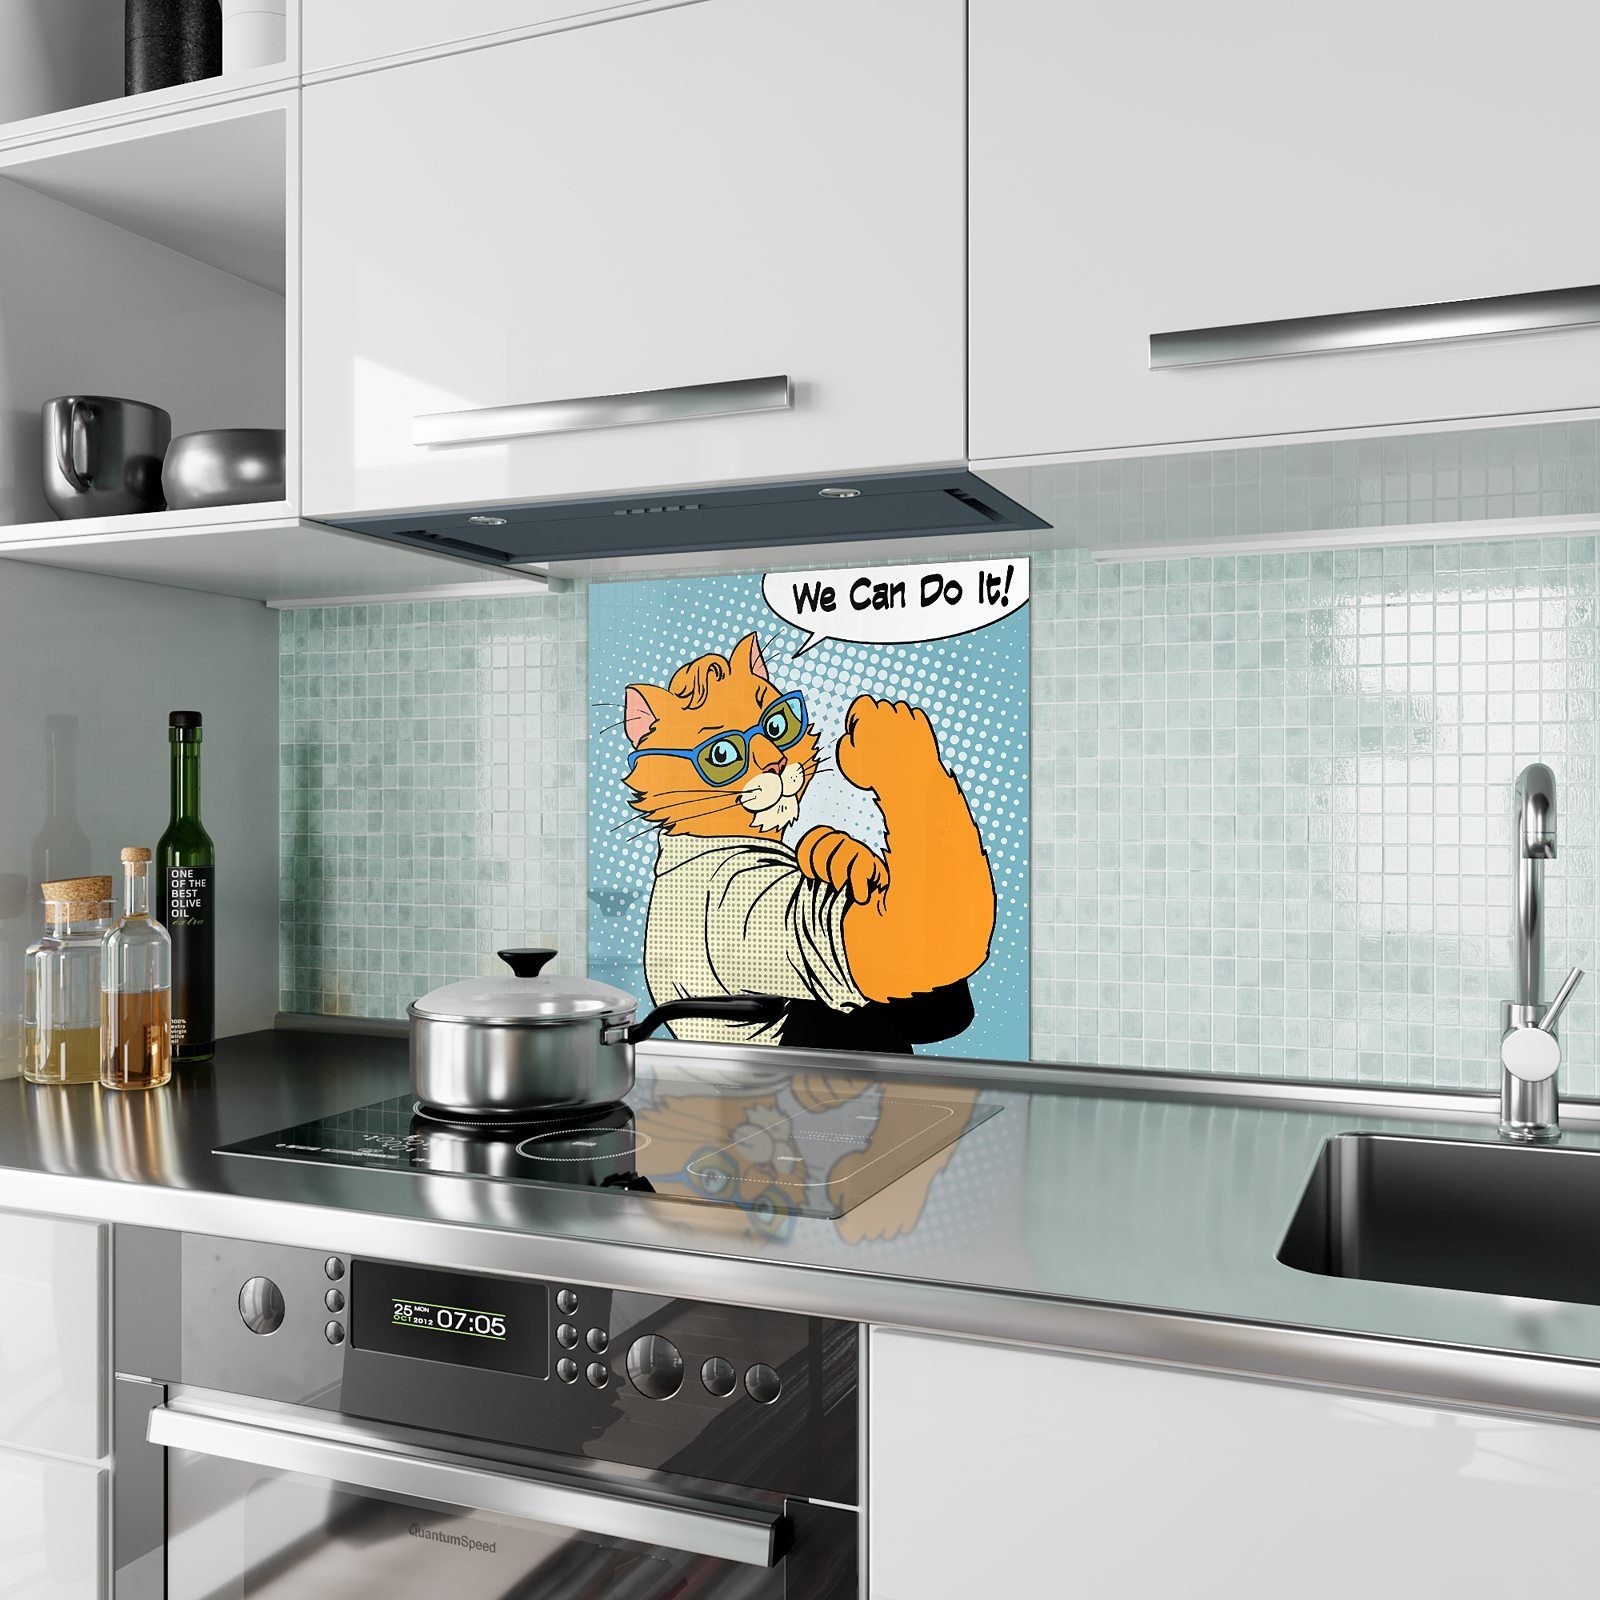 Primedeco Küchenrückwand Küchenrückwand Spritzschutz Glas Starker Kater Motiv mit